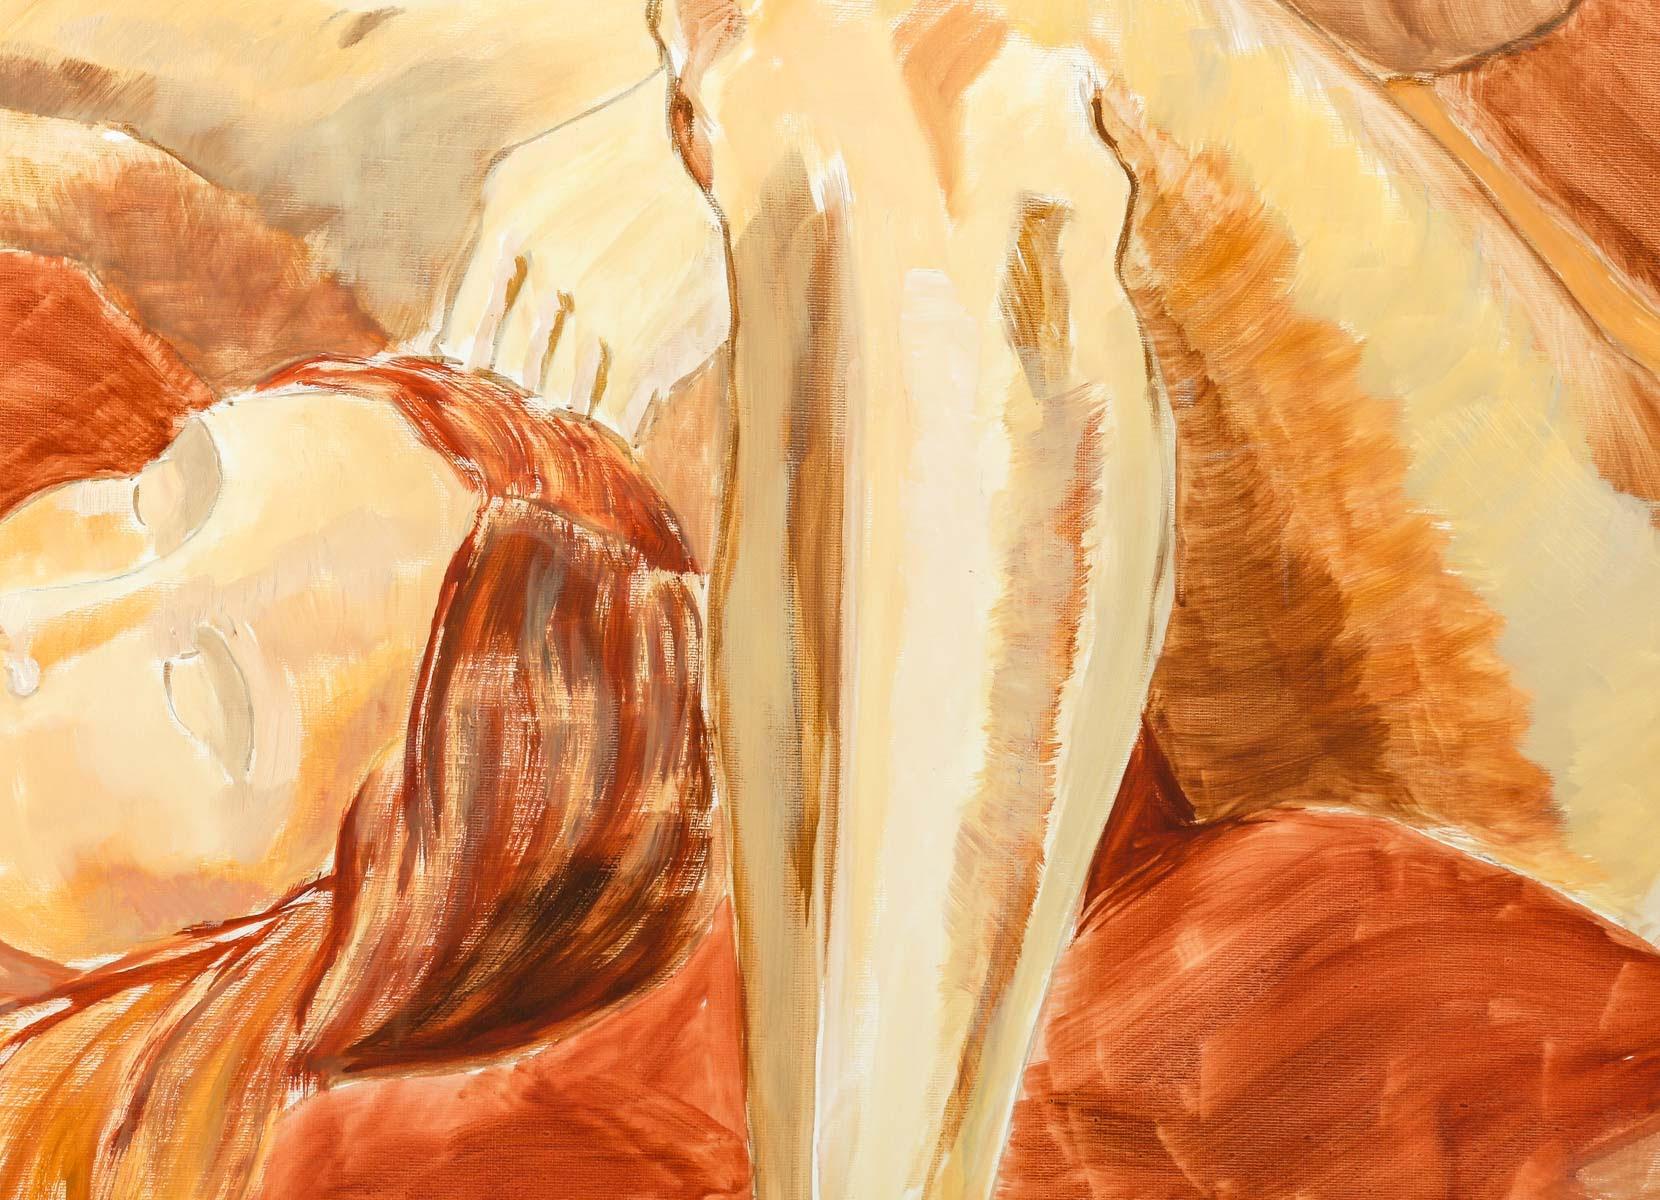 Peinture, Huile sur toile de l'Artiste Evelyne Luez, XXème siècle.

Grand tableau, huile sur toile non signée par Evelyne Luez, XXème siècle, 